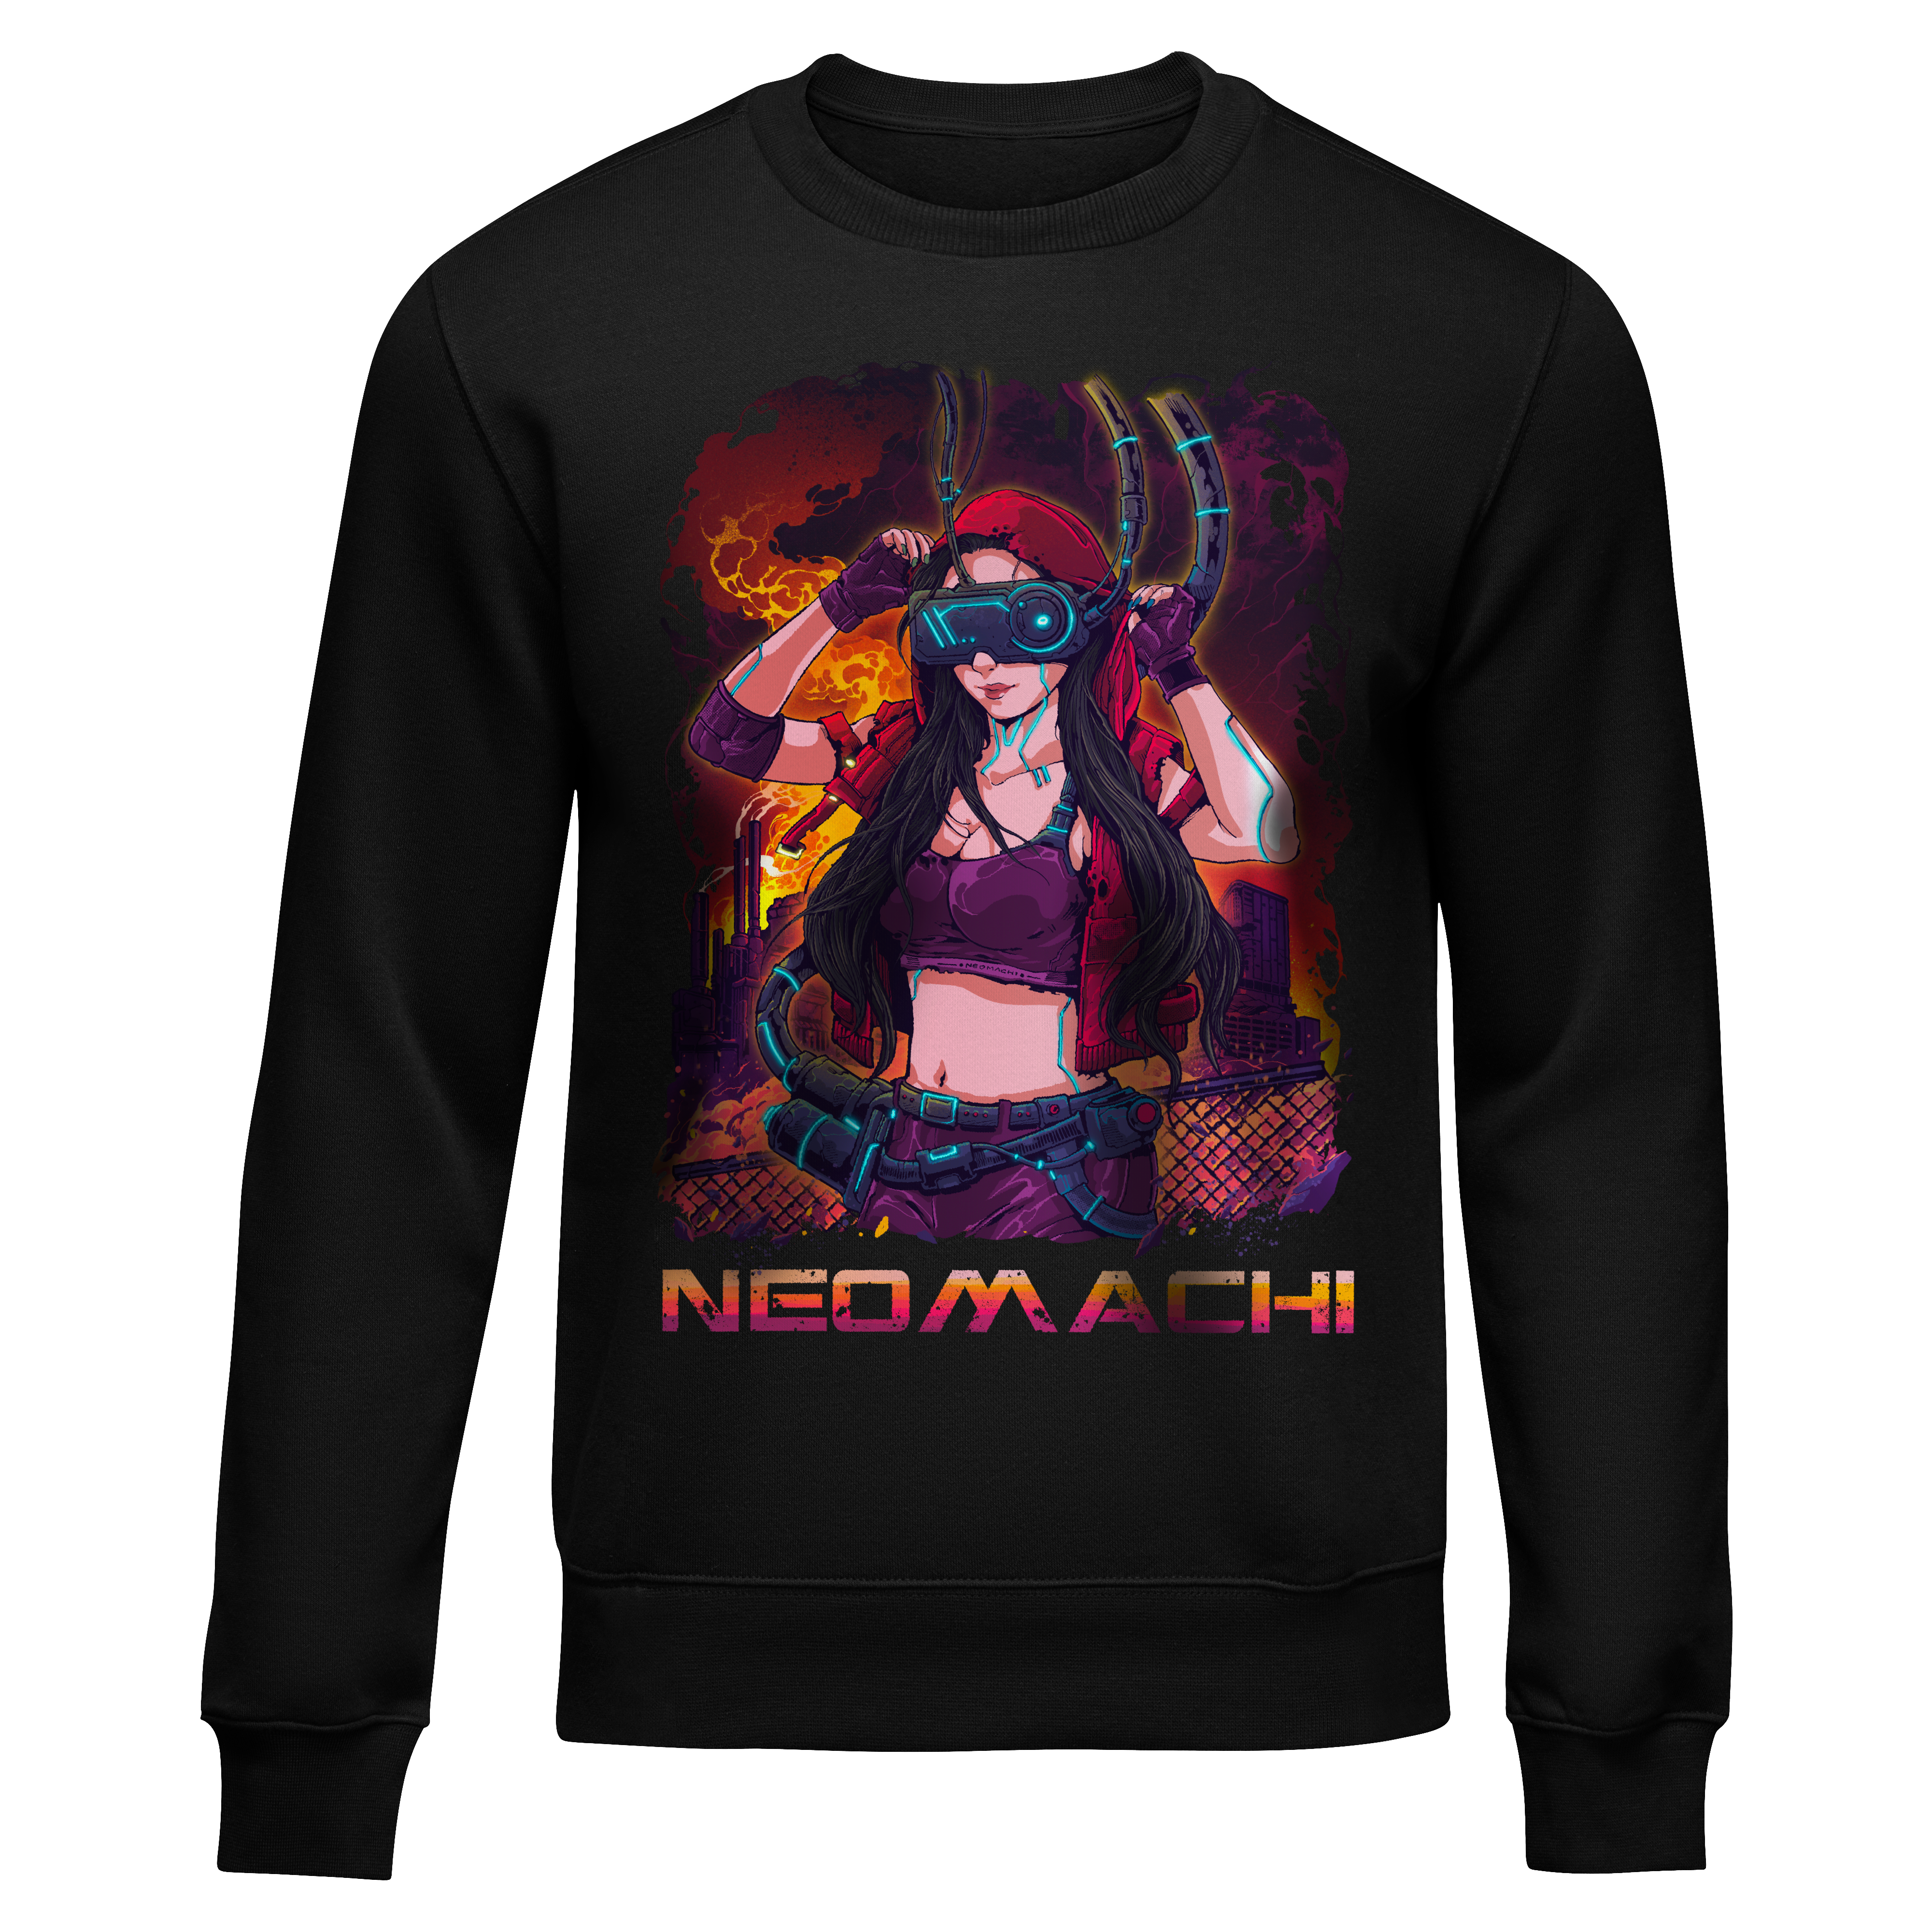 Nonfikushon: Sweater - Black - Front - cyberpunk sweaters - Neomachi